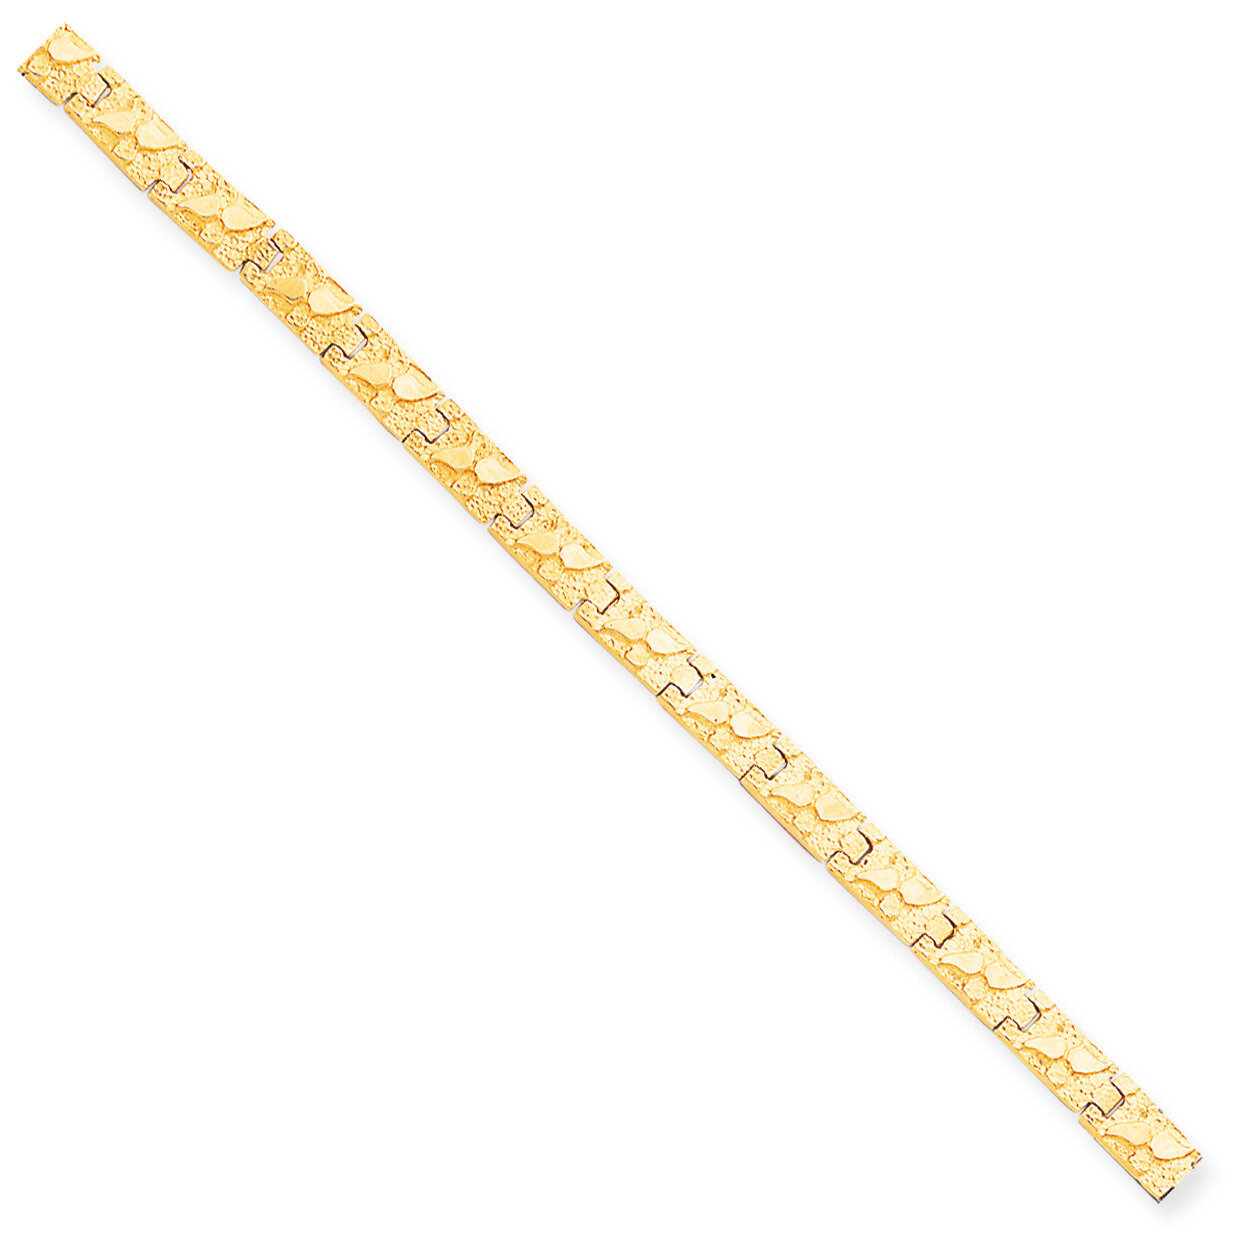 6.0mm NUGGET Bracelet 8 Inch 10k Gold 10N6-8